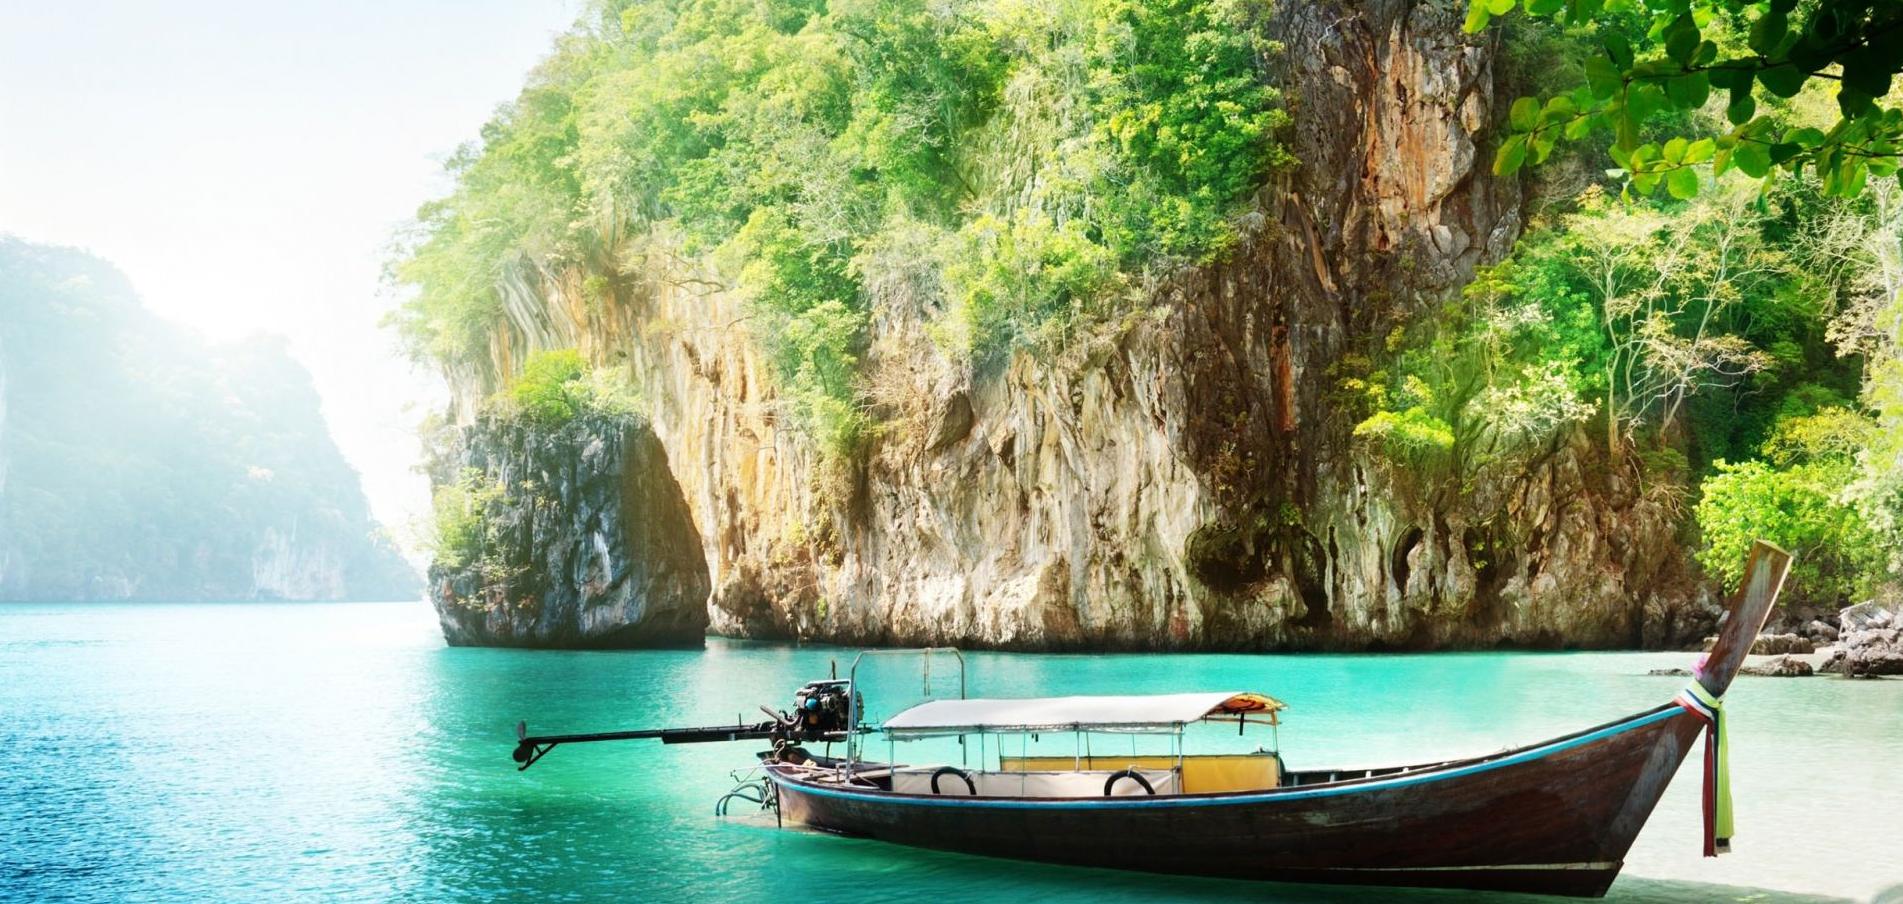 Location de yacht de luxe Thailande